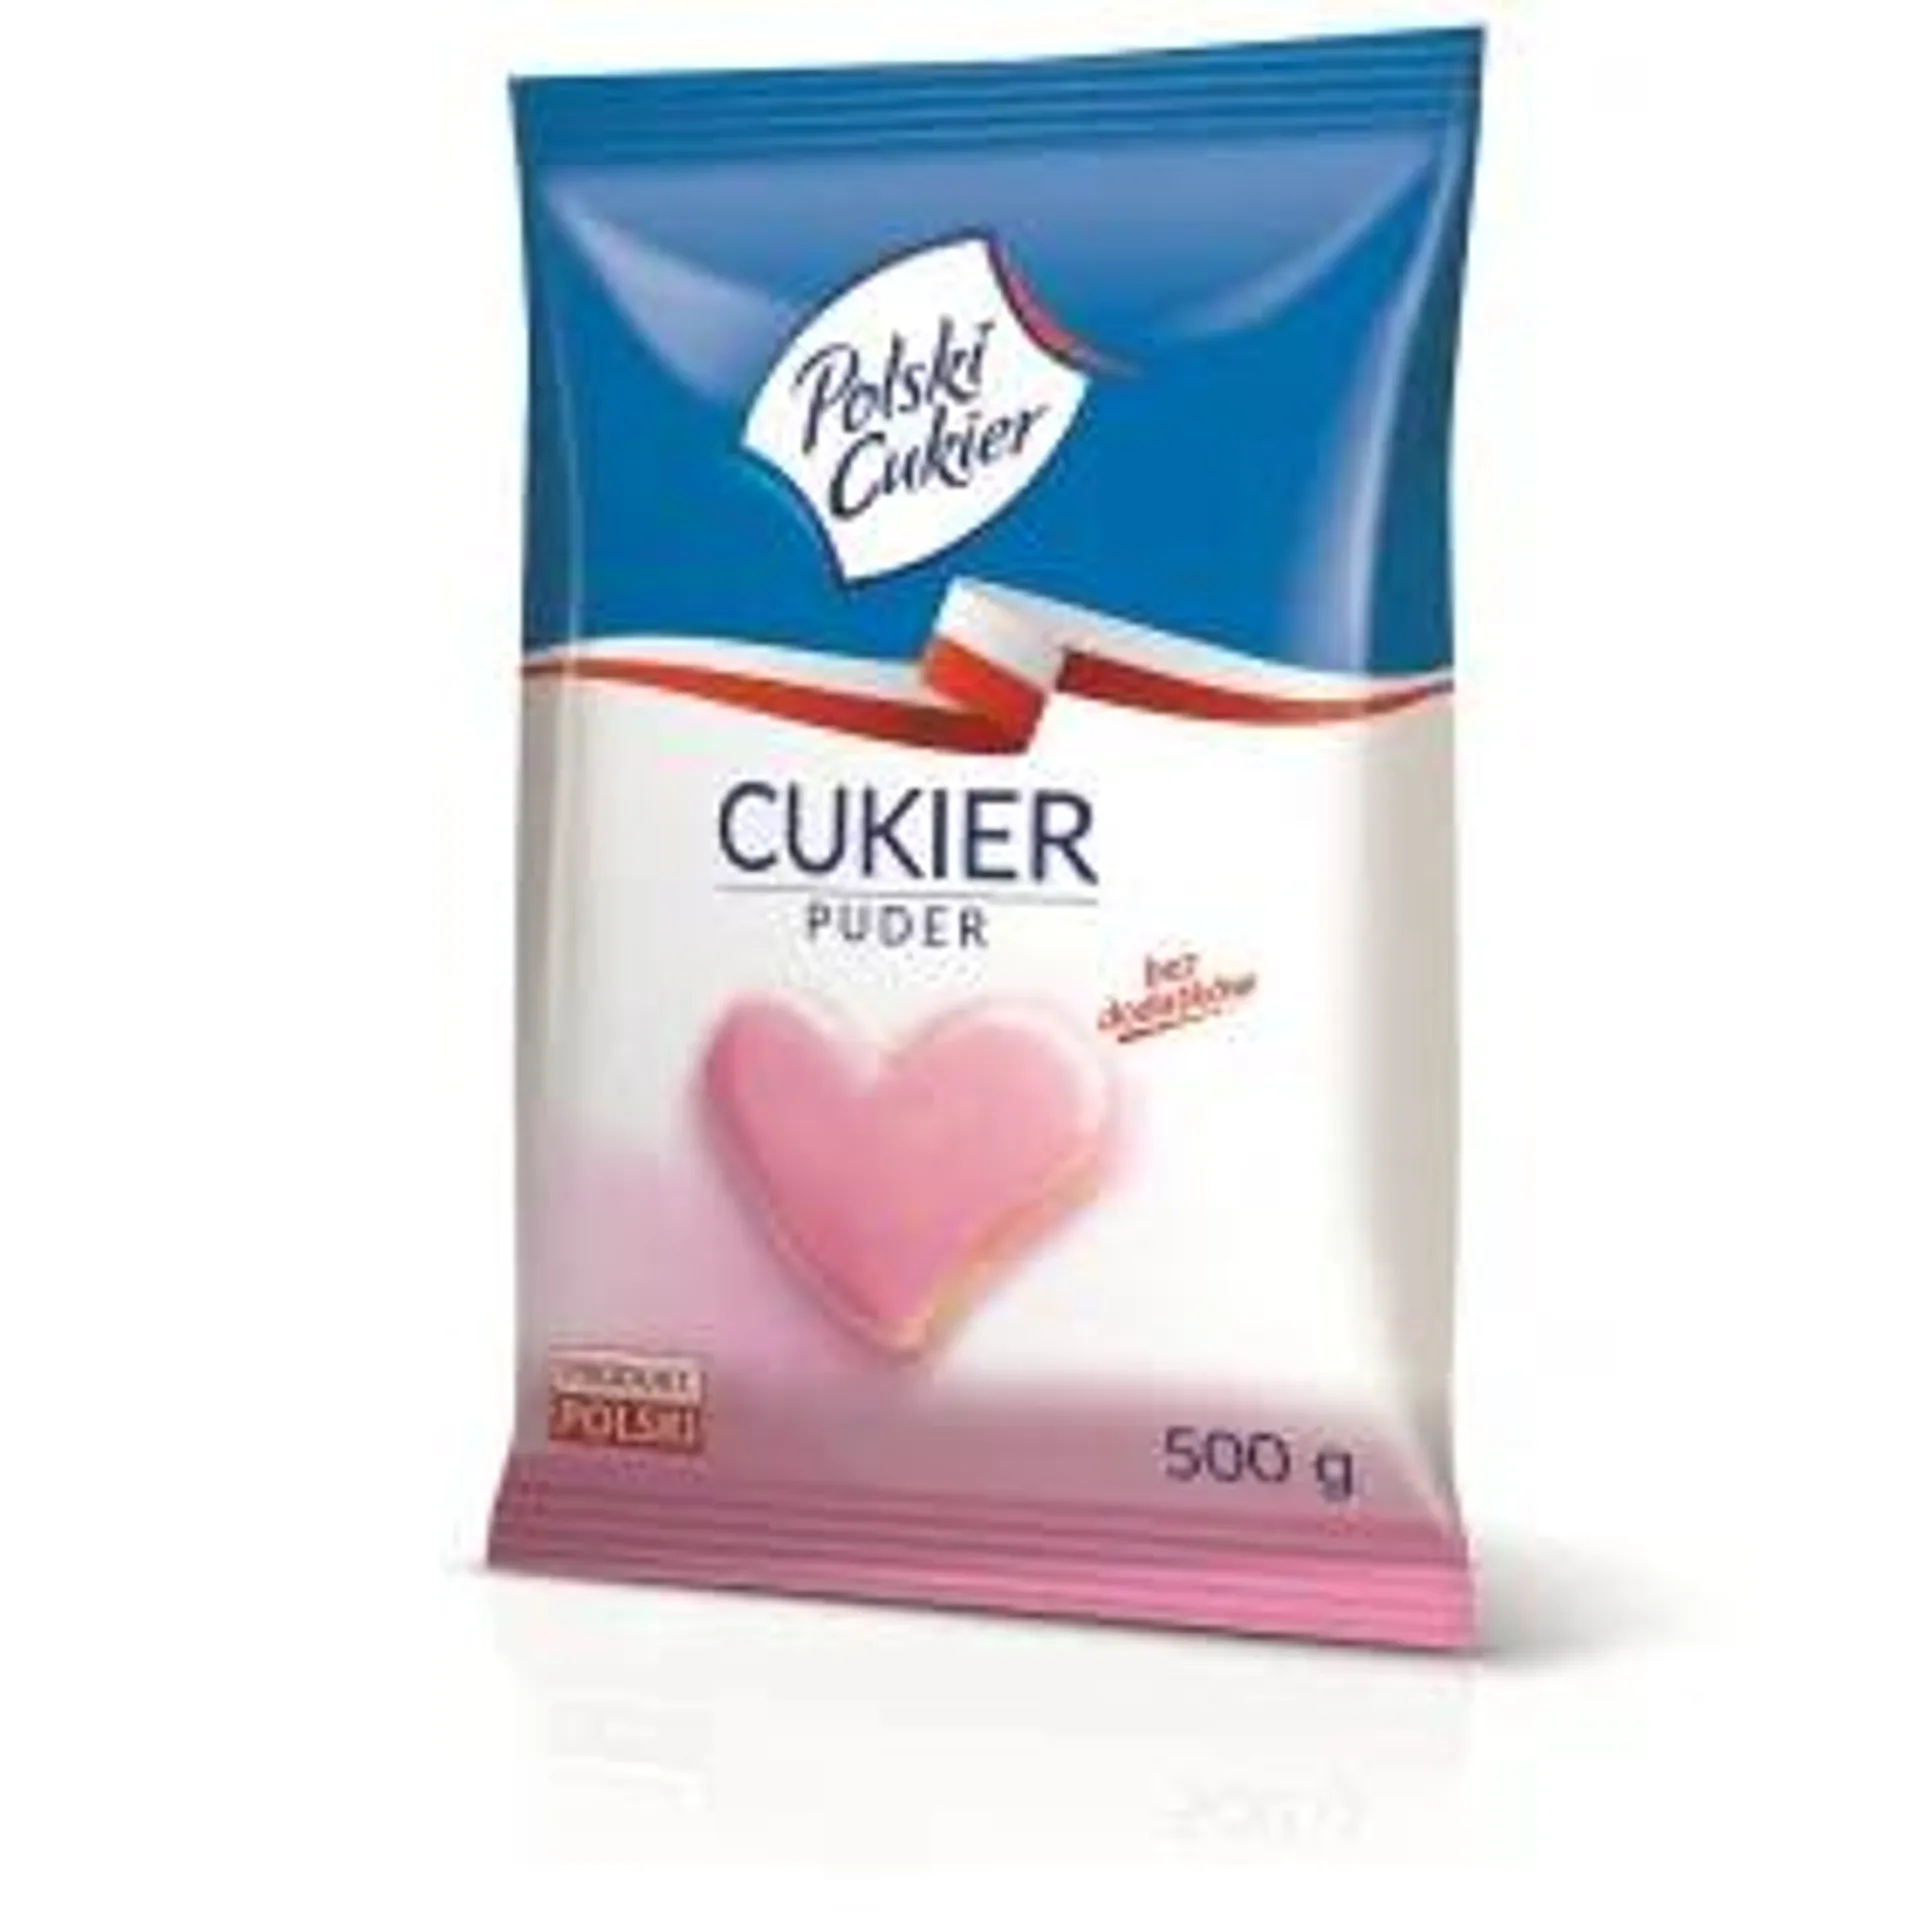 Polski Cukier - Cukier puder